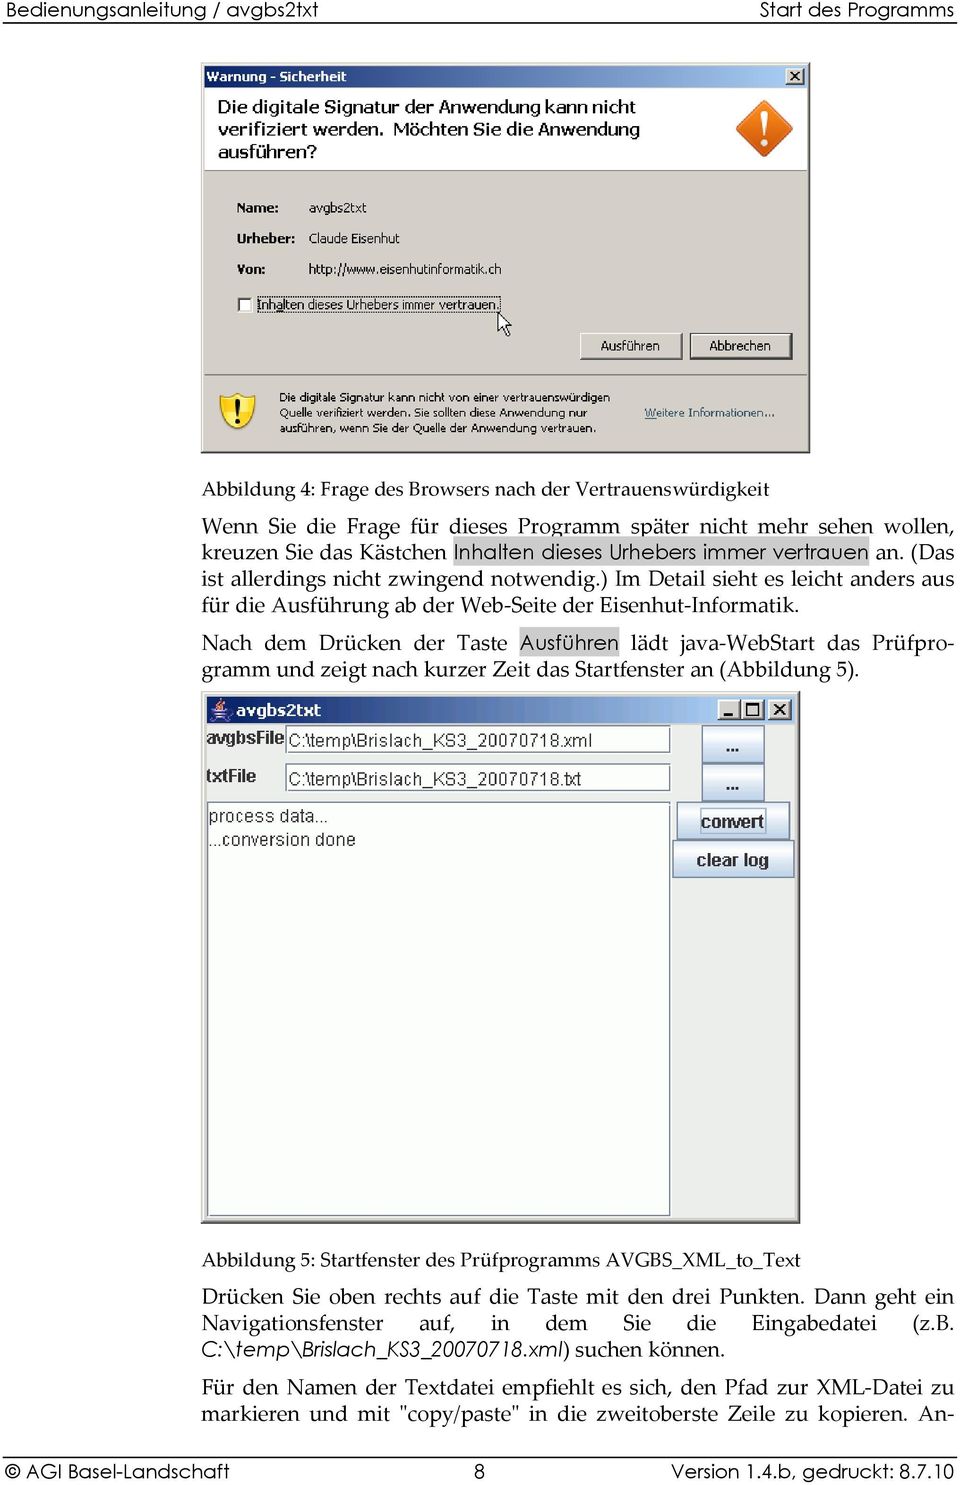 Nach dem Drücken der Taste Ausführen lädt java-webstart das Prüfprogramm und zeigt nach kurzer Zeit das Startfenster an (Abbildung 5).